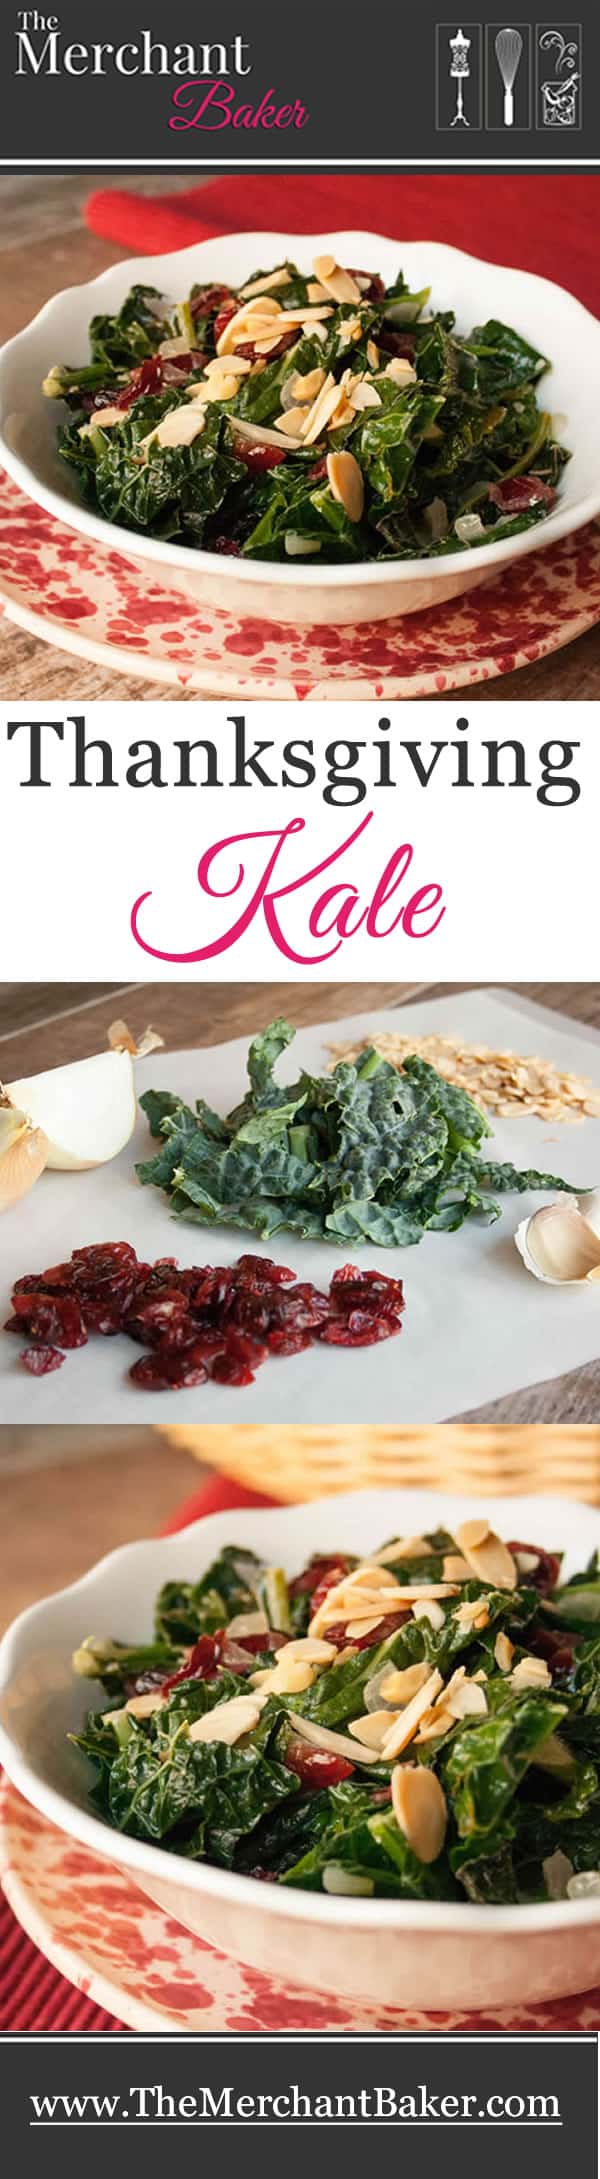 Thanksgiving Kale